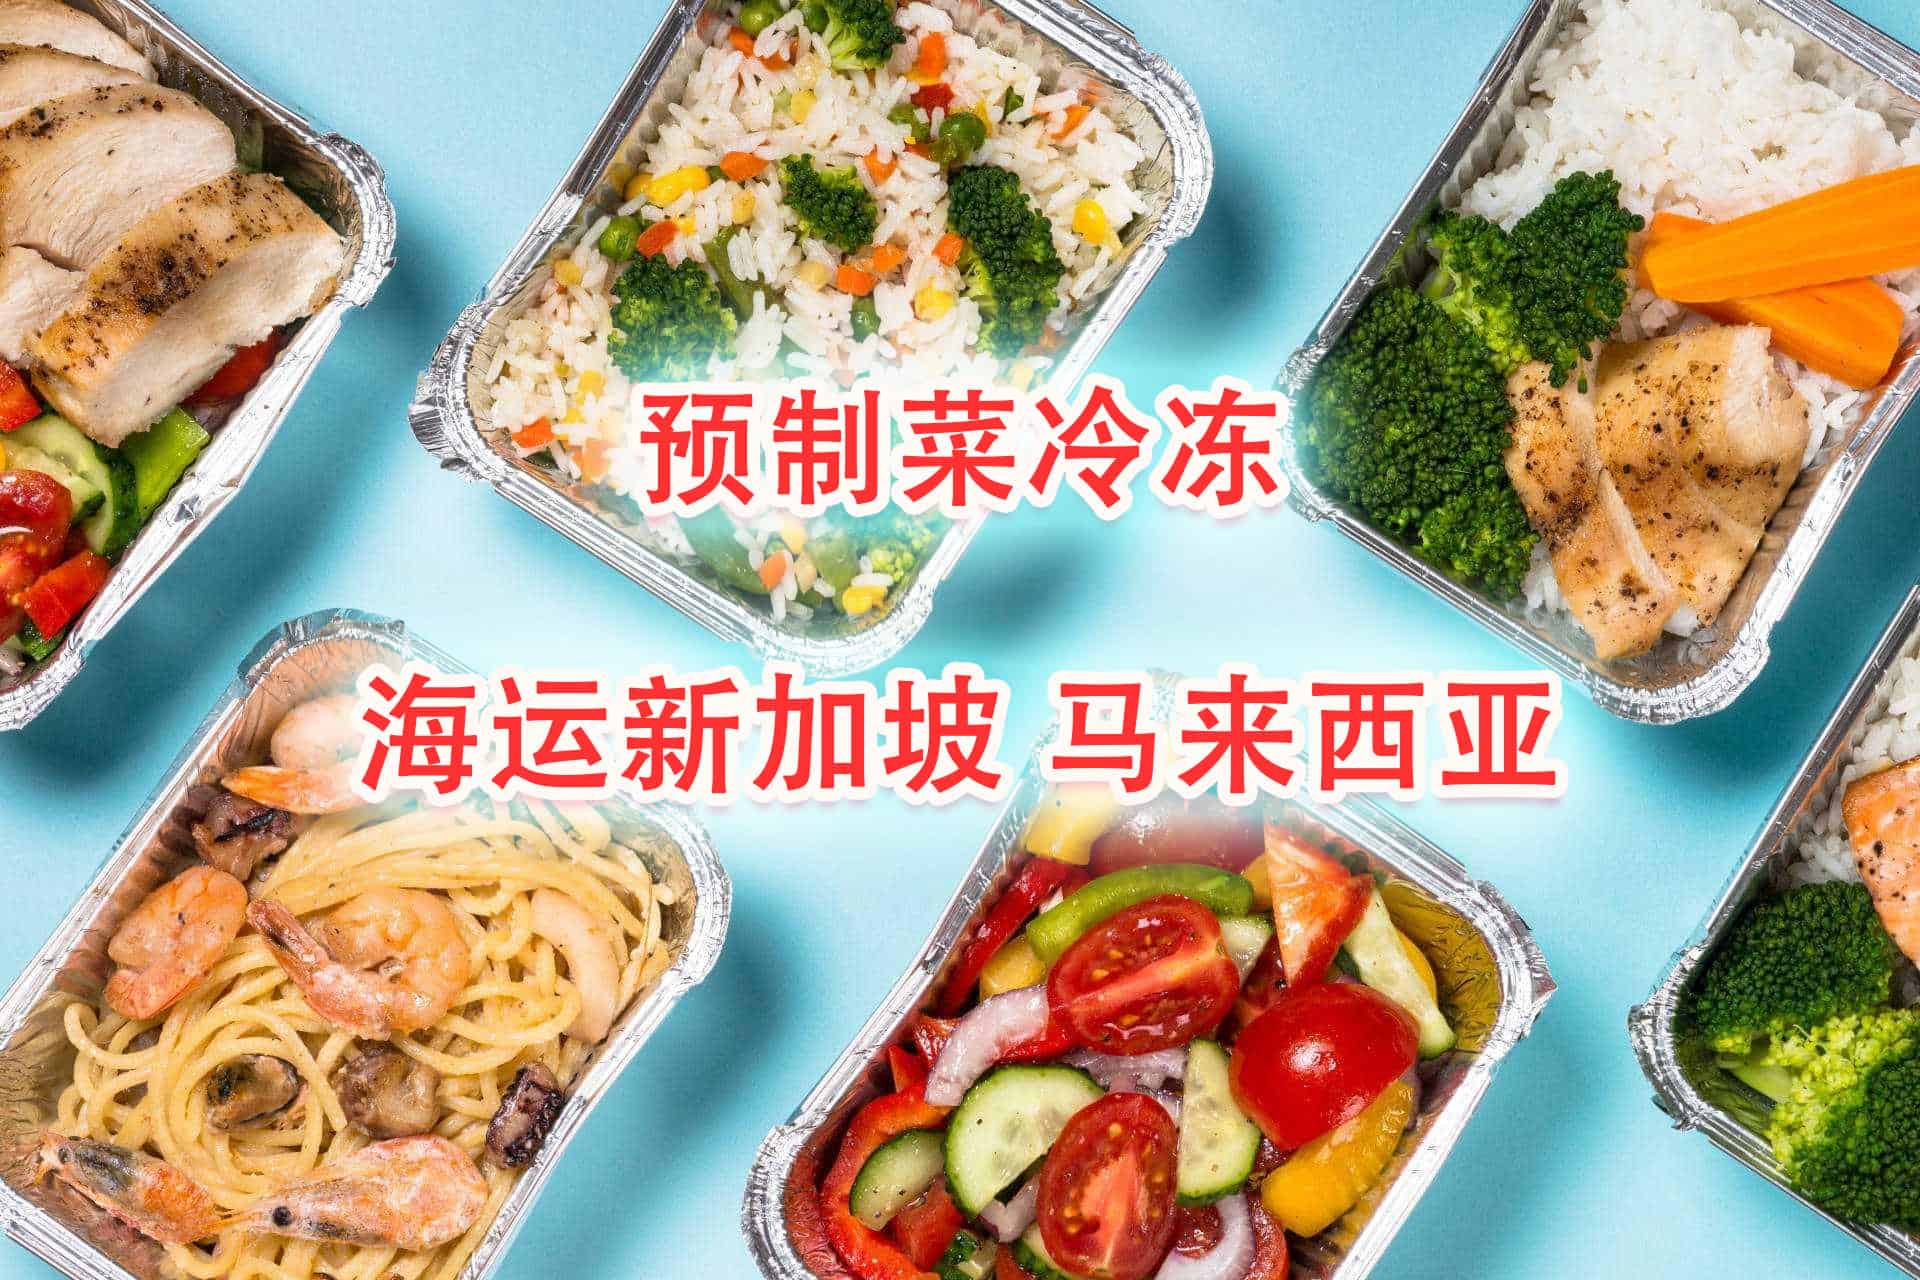 预制菜、冷冻食品、海鲜肉类海运冷链拼箱—新加坡马来西亚